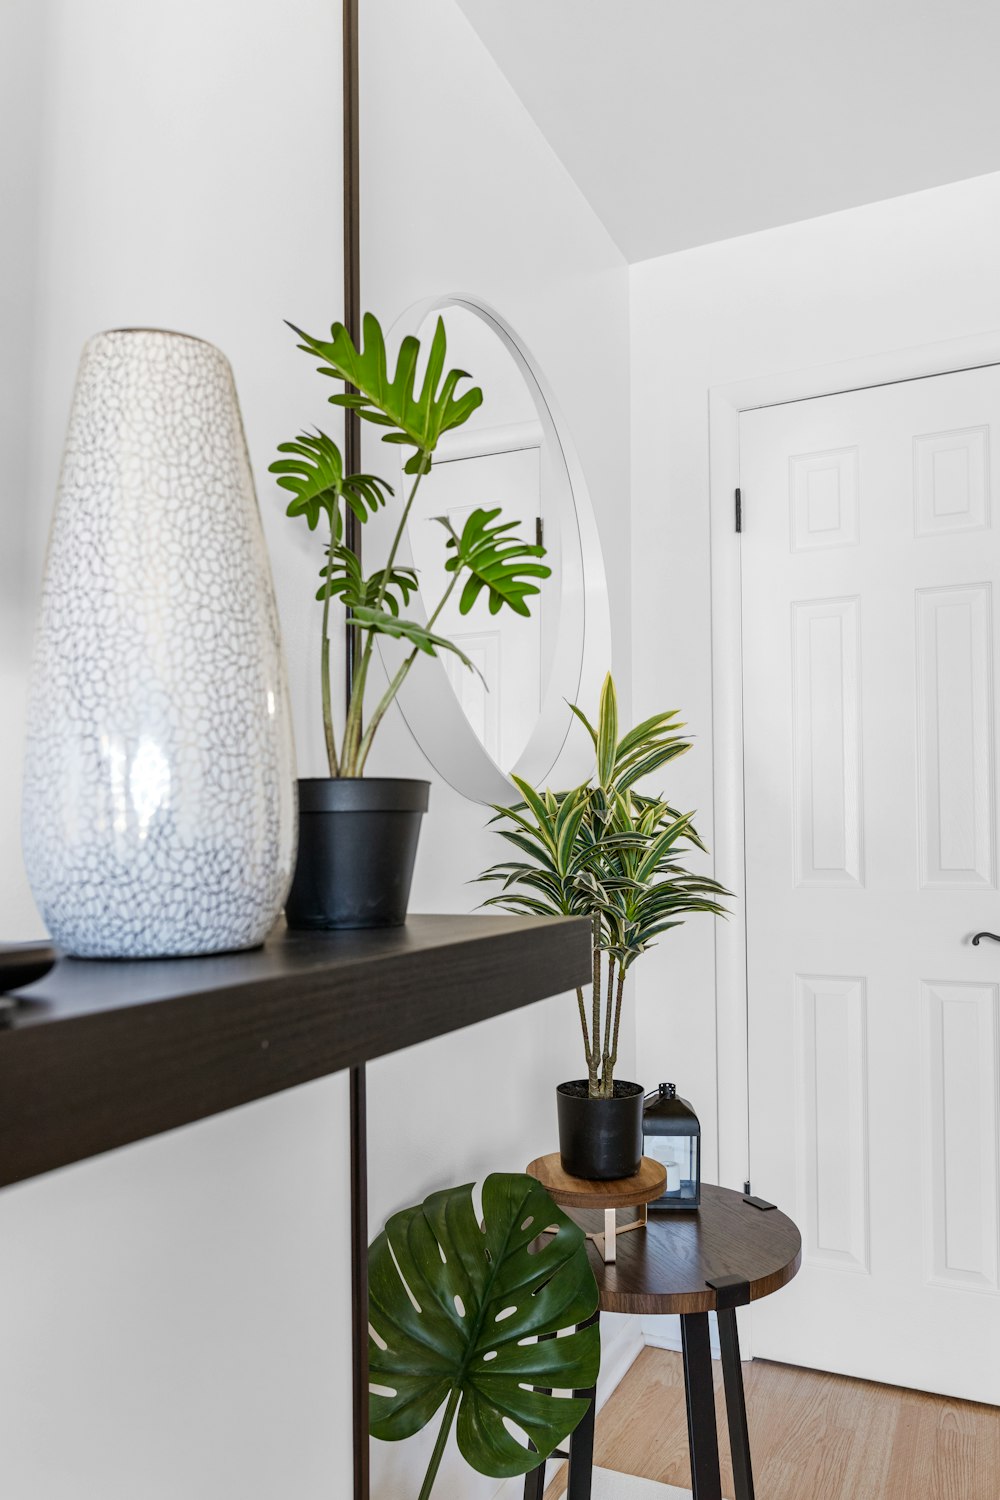 Un jarrón blanco sentado encima de un estante junto a una planta